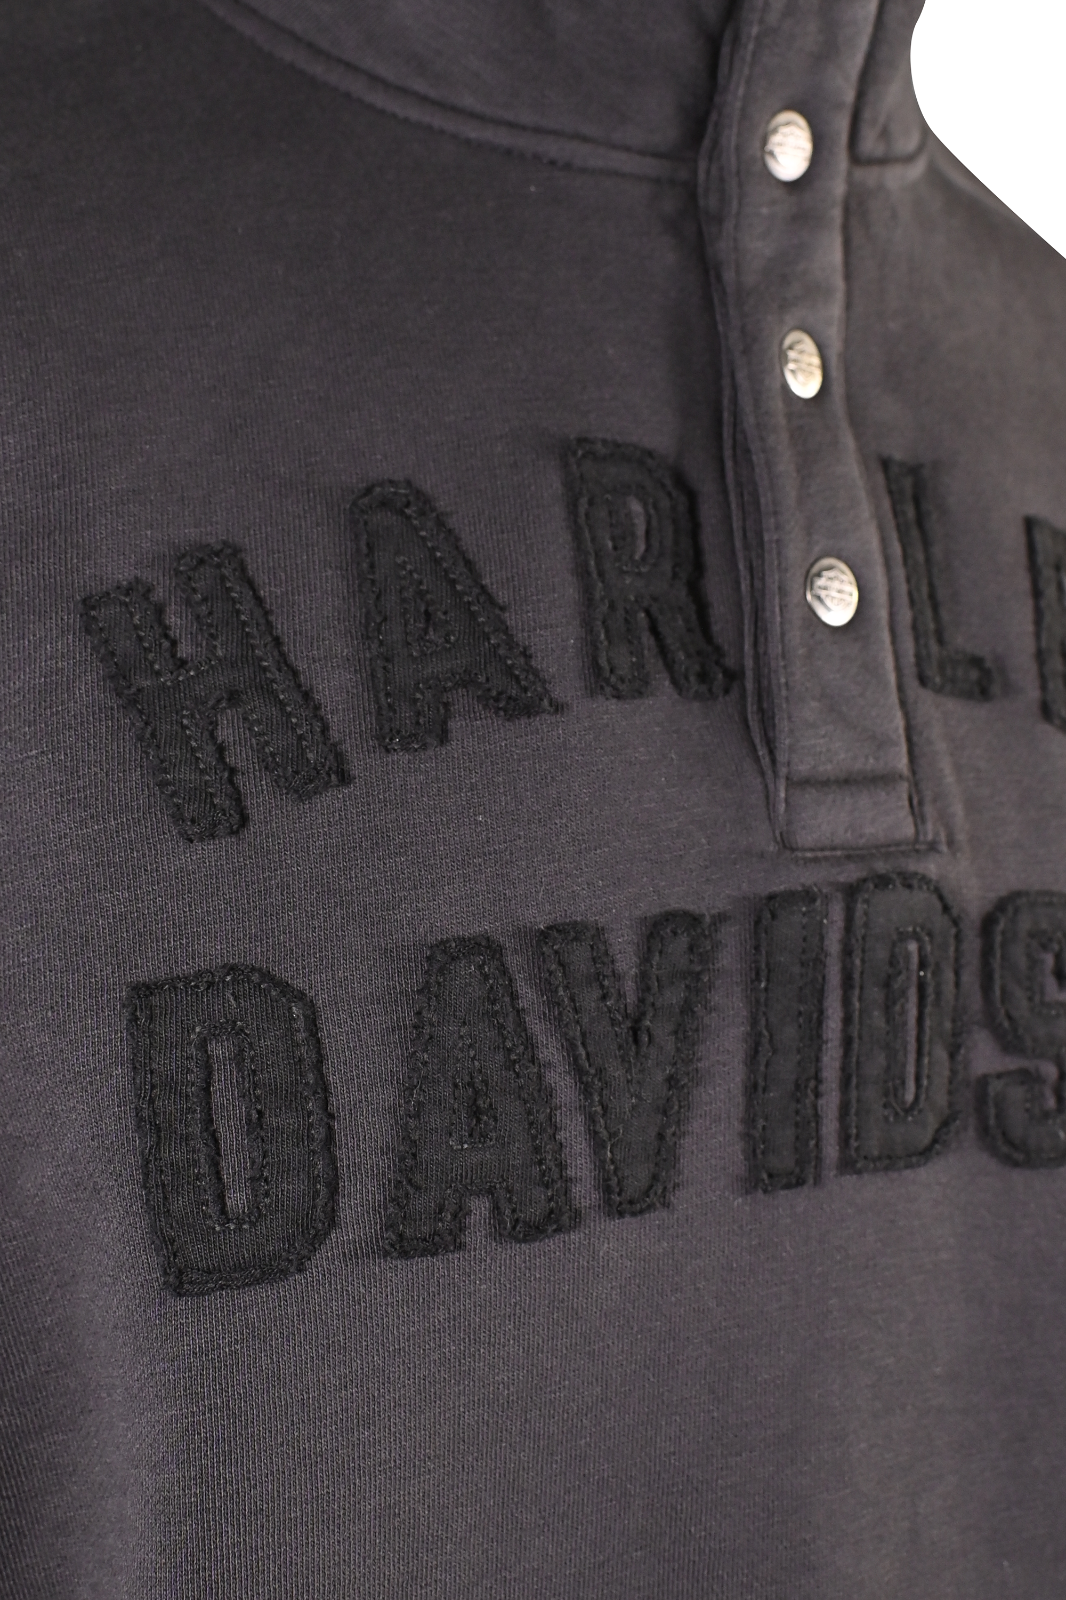 Harley-Davidson Men's Sweater Black Racer Snap Front Mockneck (S03)